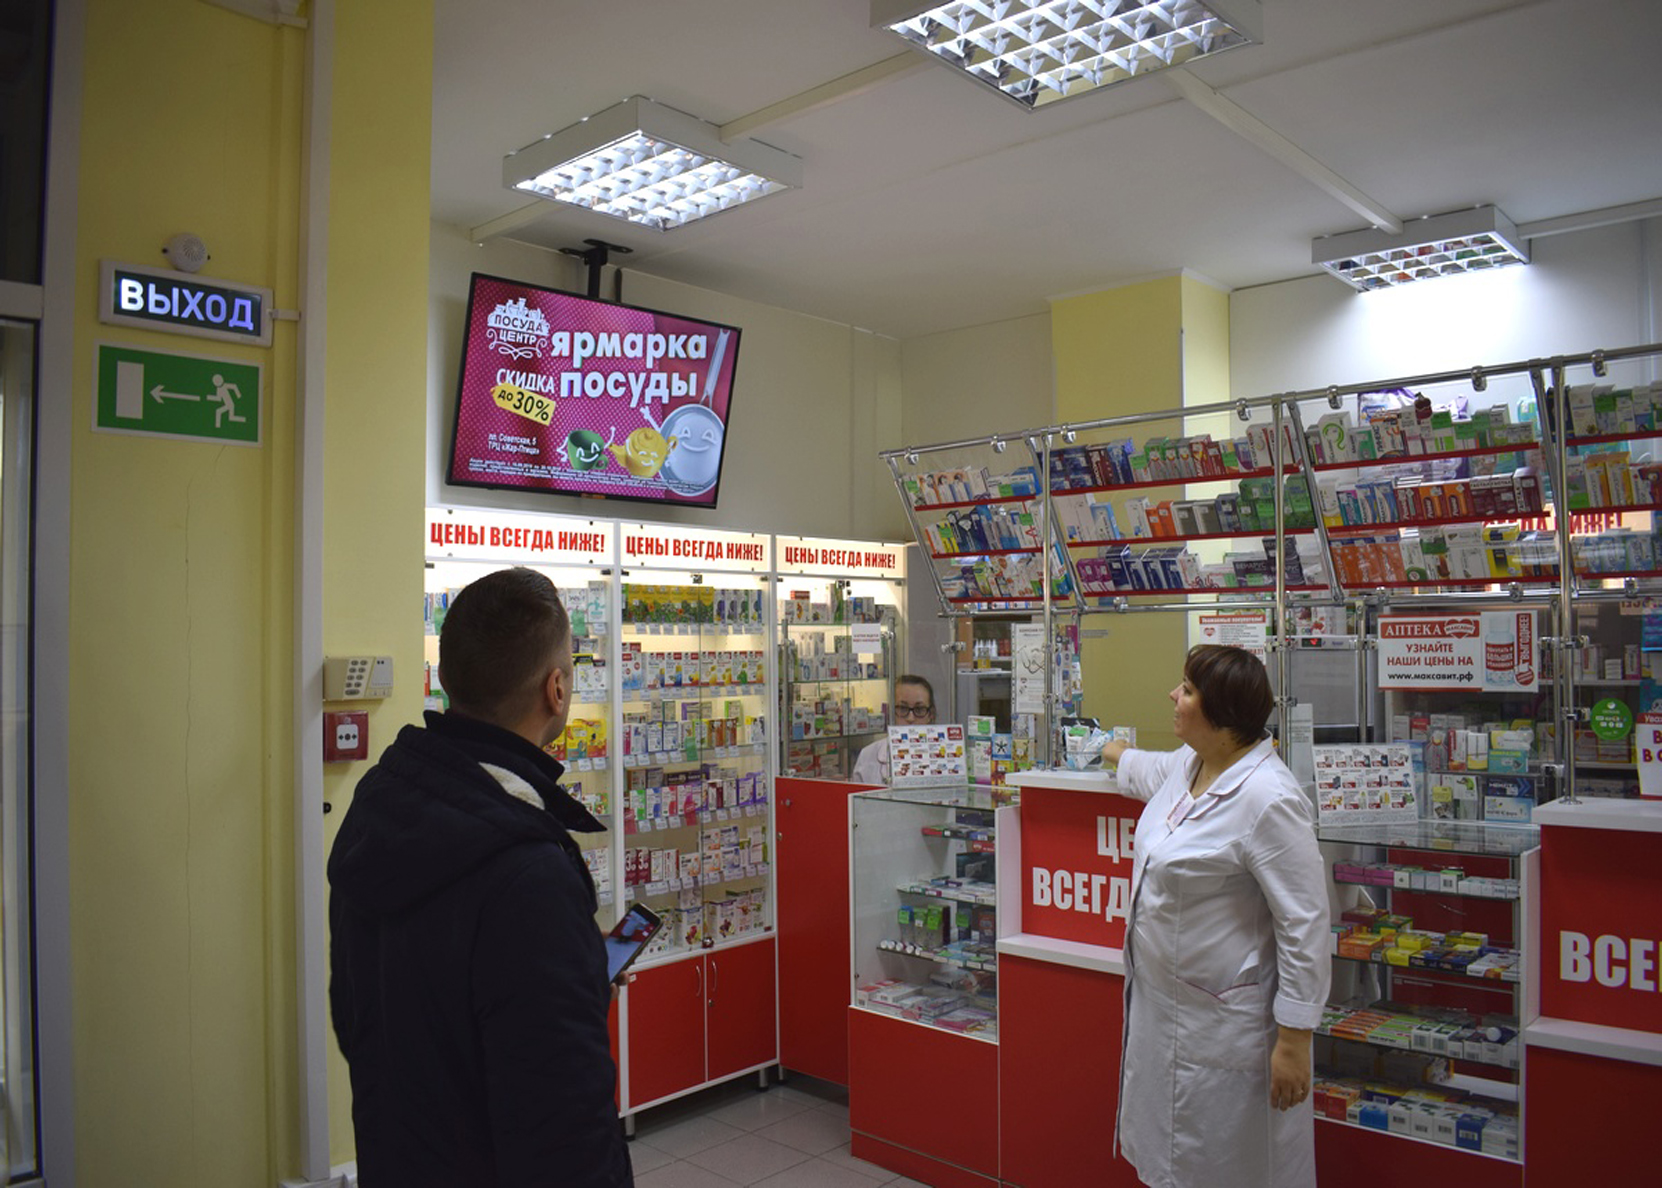 Максавит сайт тула. Аптека Максавит Нижний Новгород. Рекламный монитор в аптеке. Монитор с рекламой в аптеке. Экраны в аптеках.